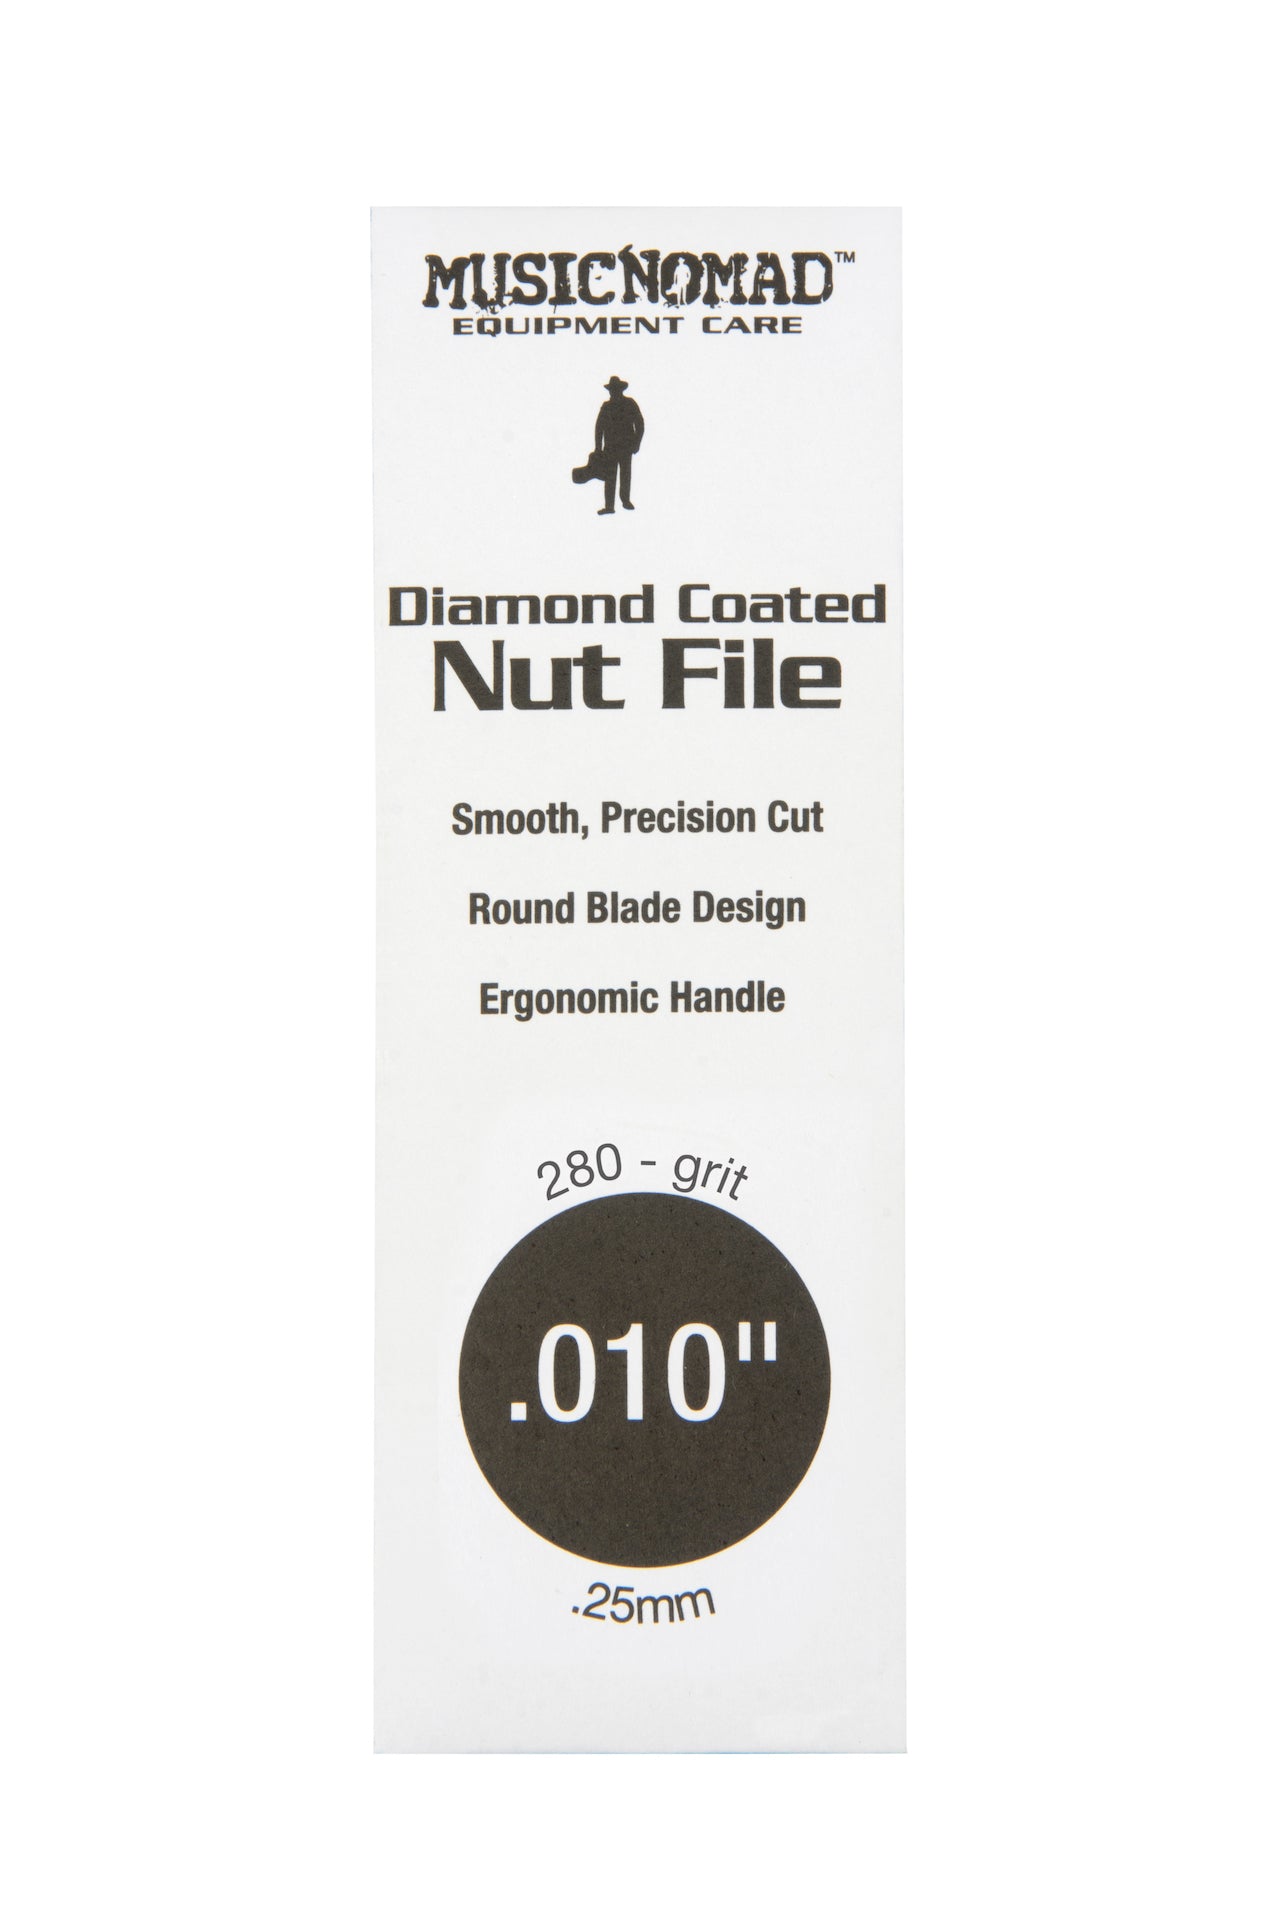 Music Nomad Diamond Coated Nut File Singles - HIENDGUITAR .010" .010" musicnomad musicnomad